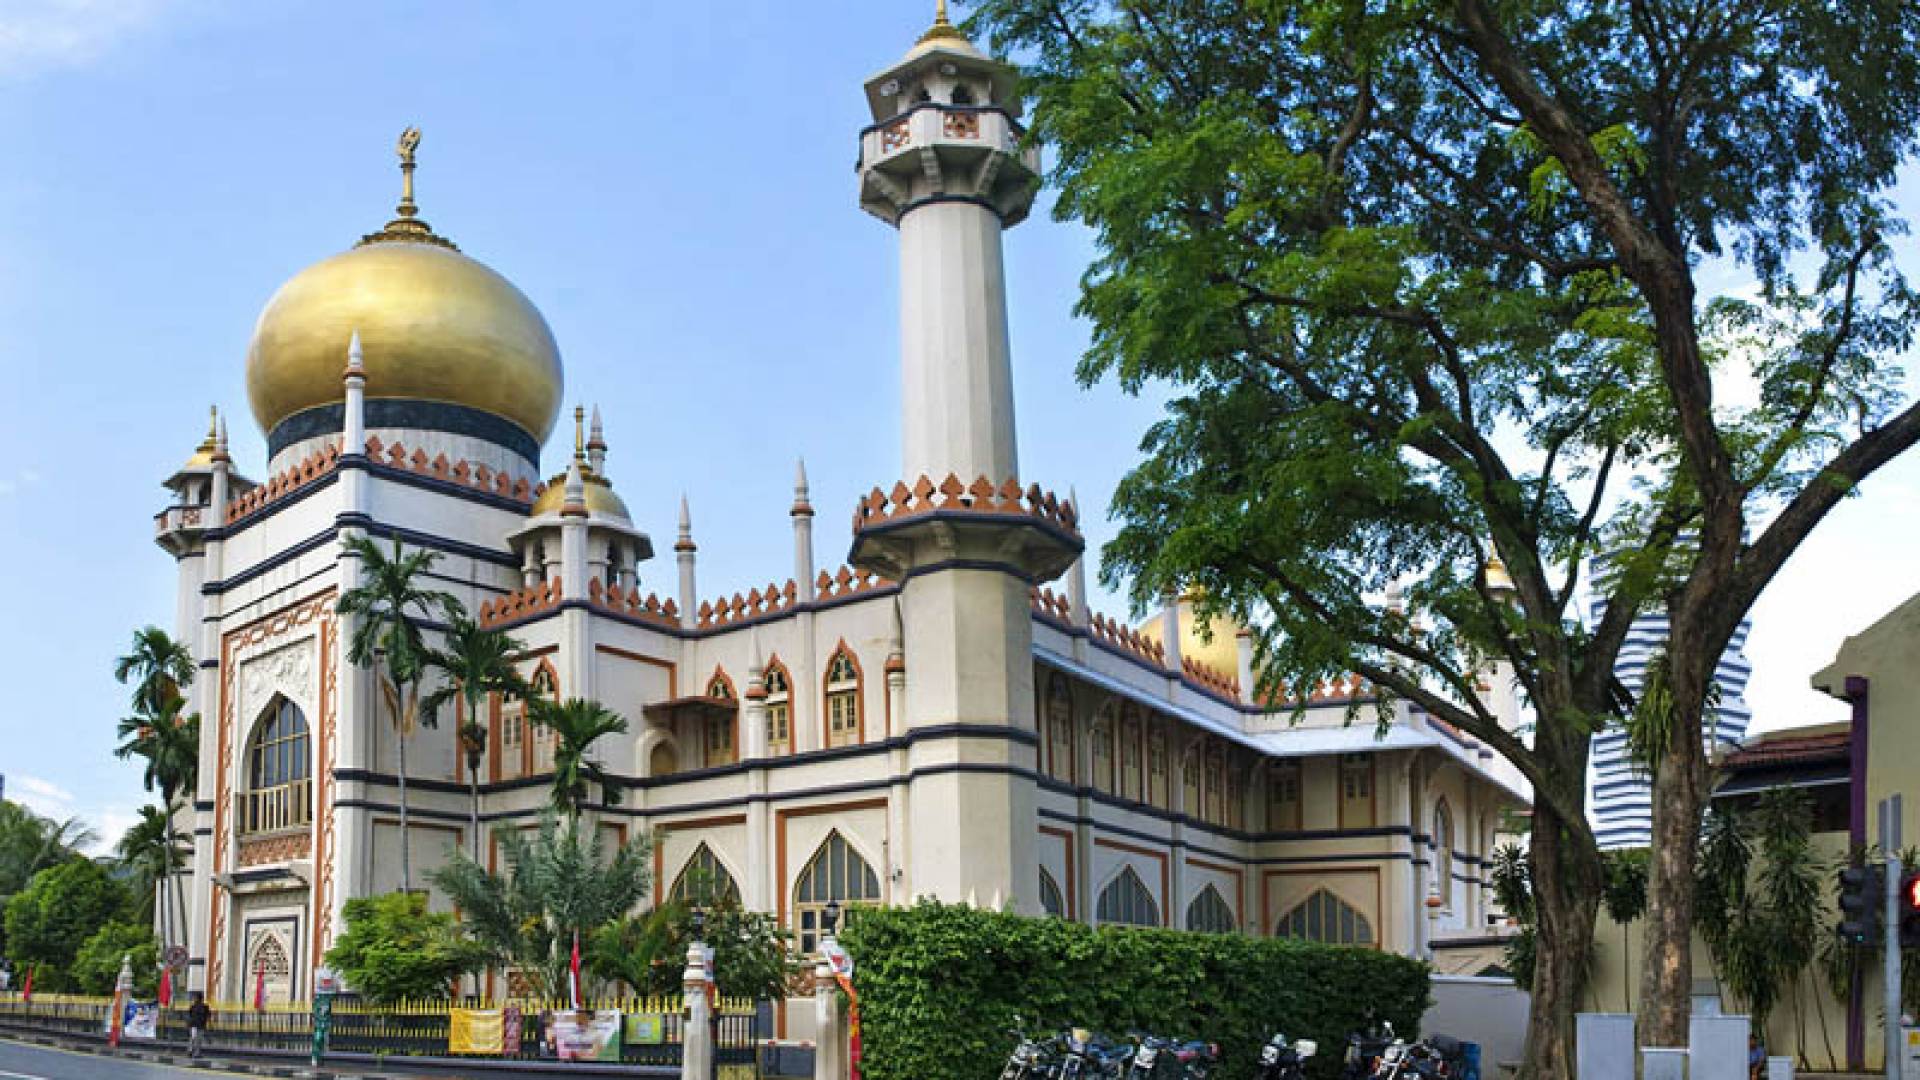 SULTAN MOSQUE, Sultan Mosque